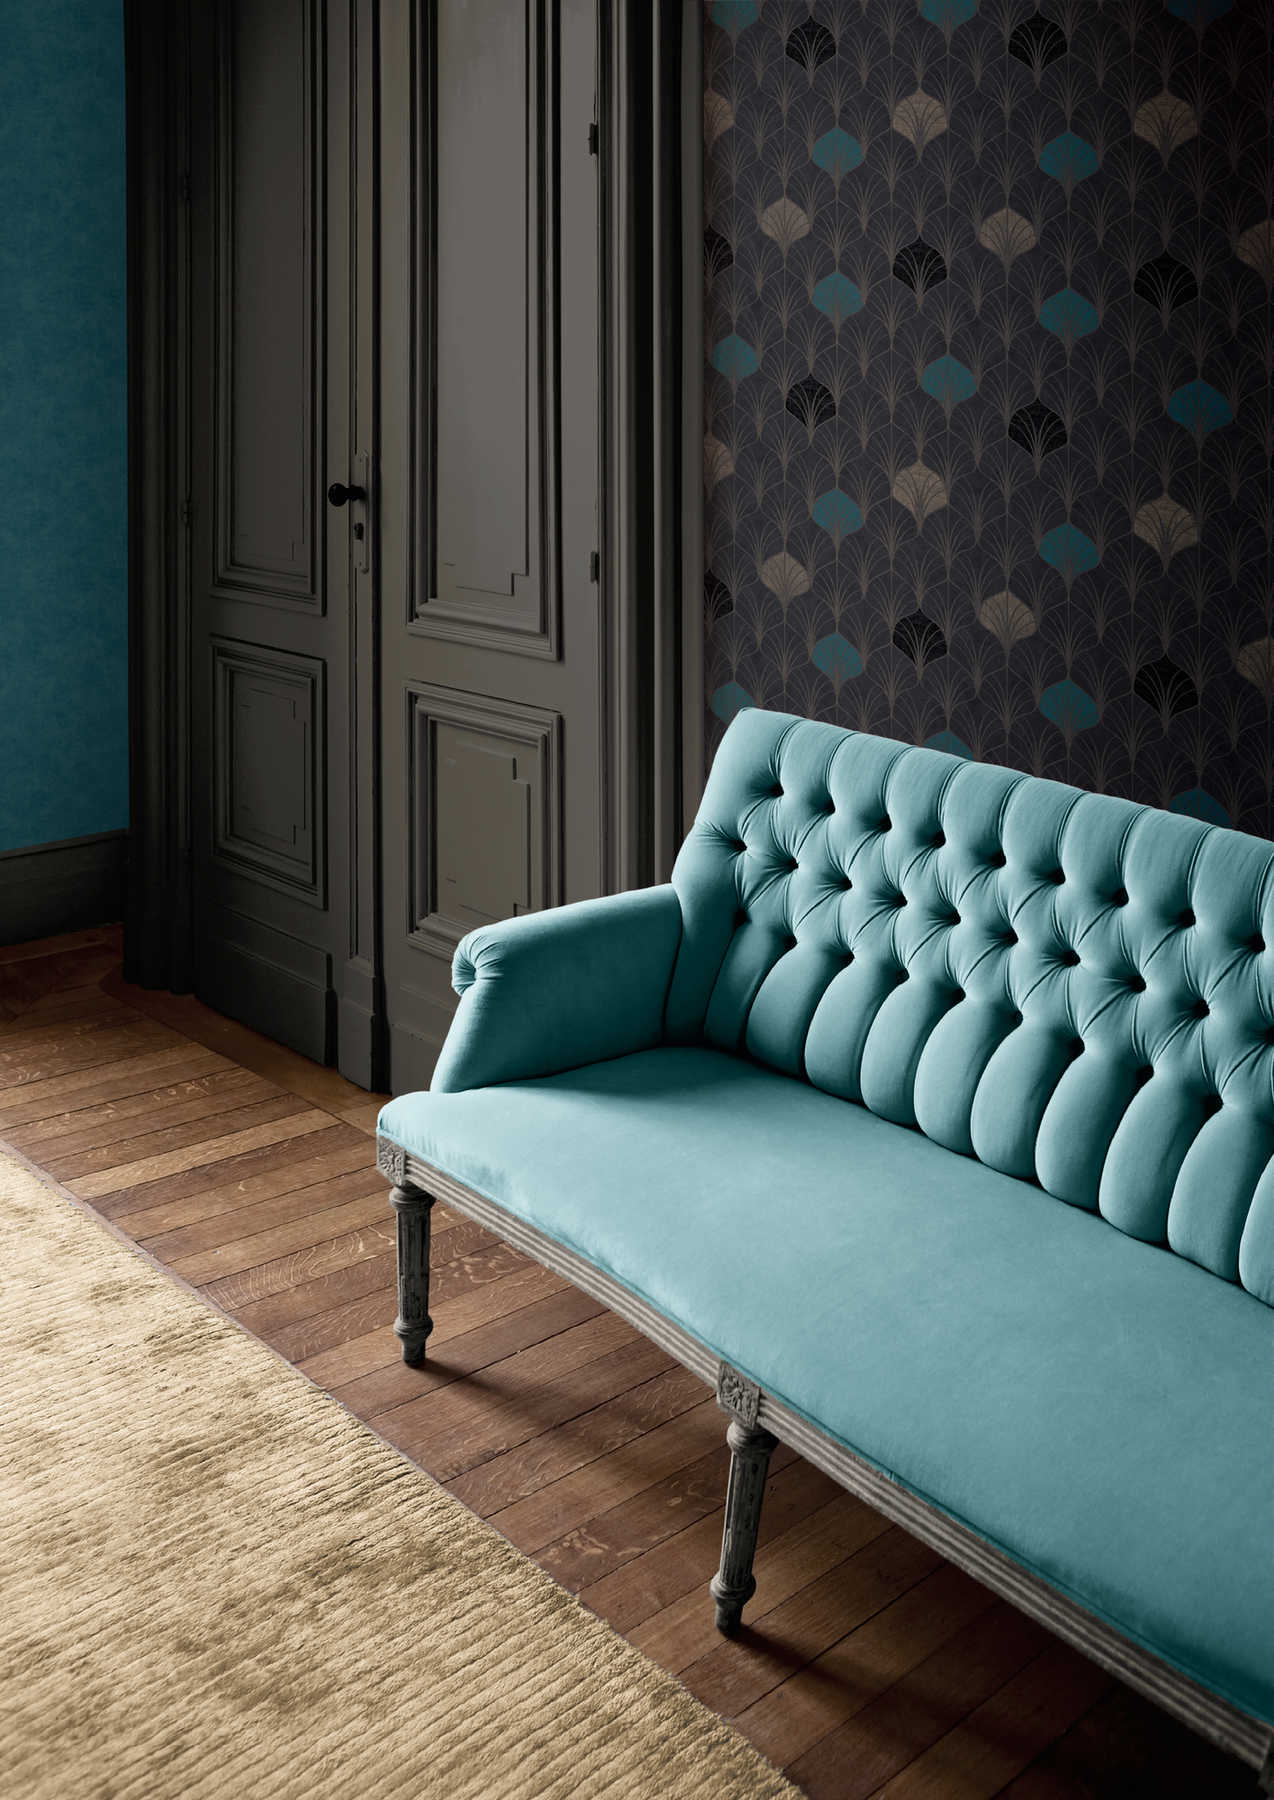             Mustertapete Art-Deco-Stil mit Metallic Effekt – Gold, Schwarz, Blau
        